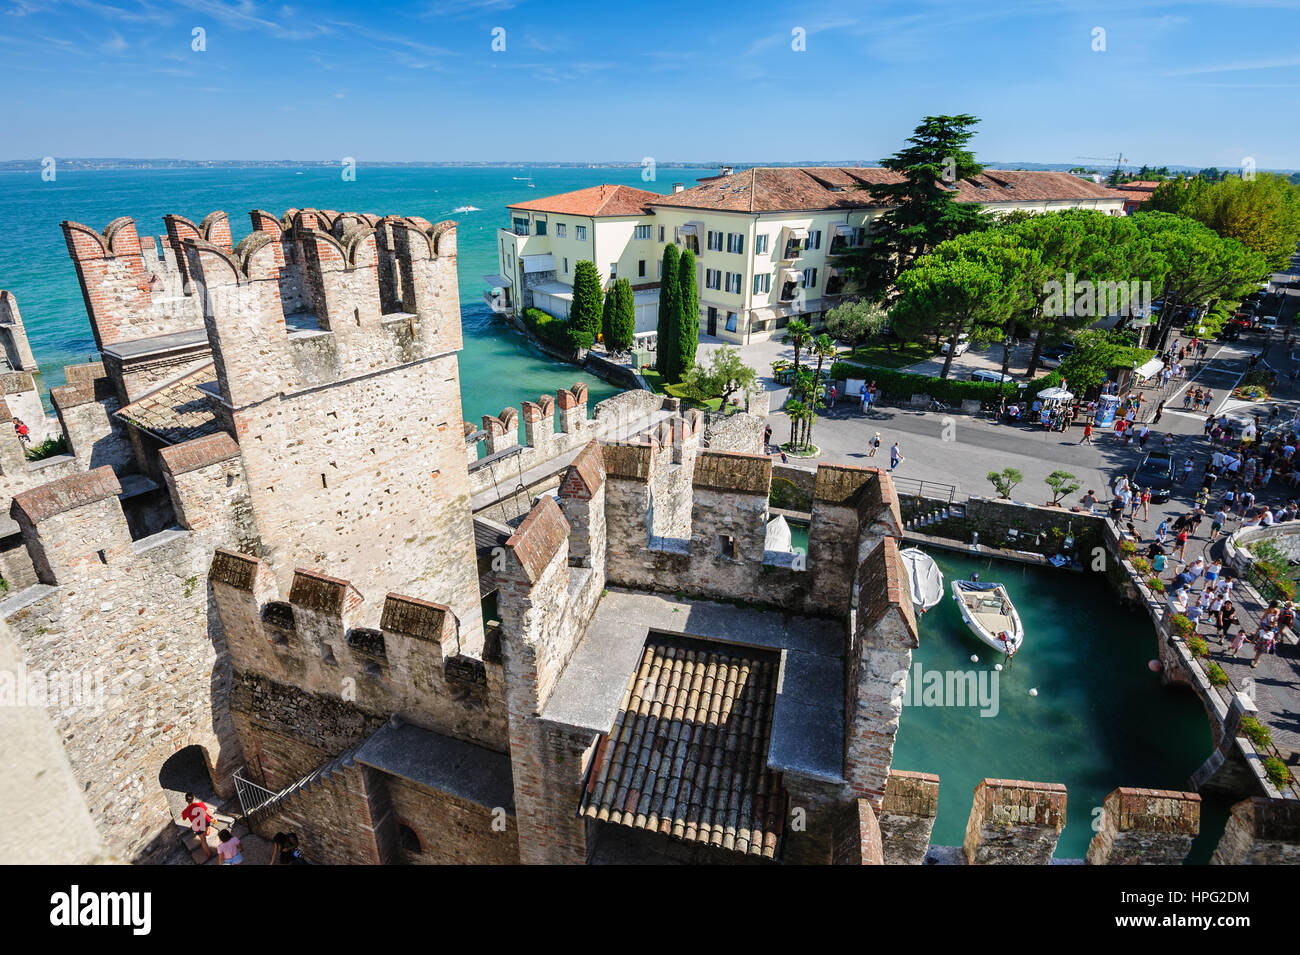 Sirmione, provincia di Brescia, Lombardia, Italia settentrionale - 15 agosto 2016: le persone che visitano il medievale Castello Scaligero lago sul lago di Garda Foto Stock